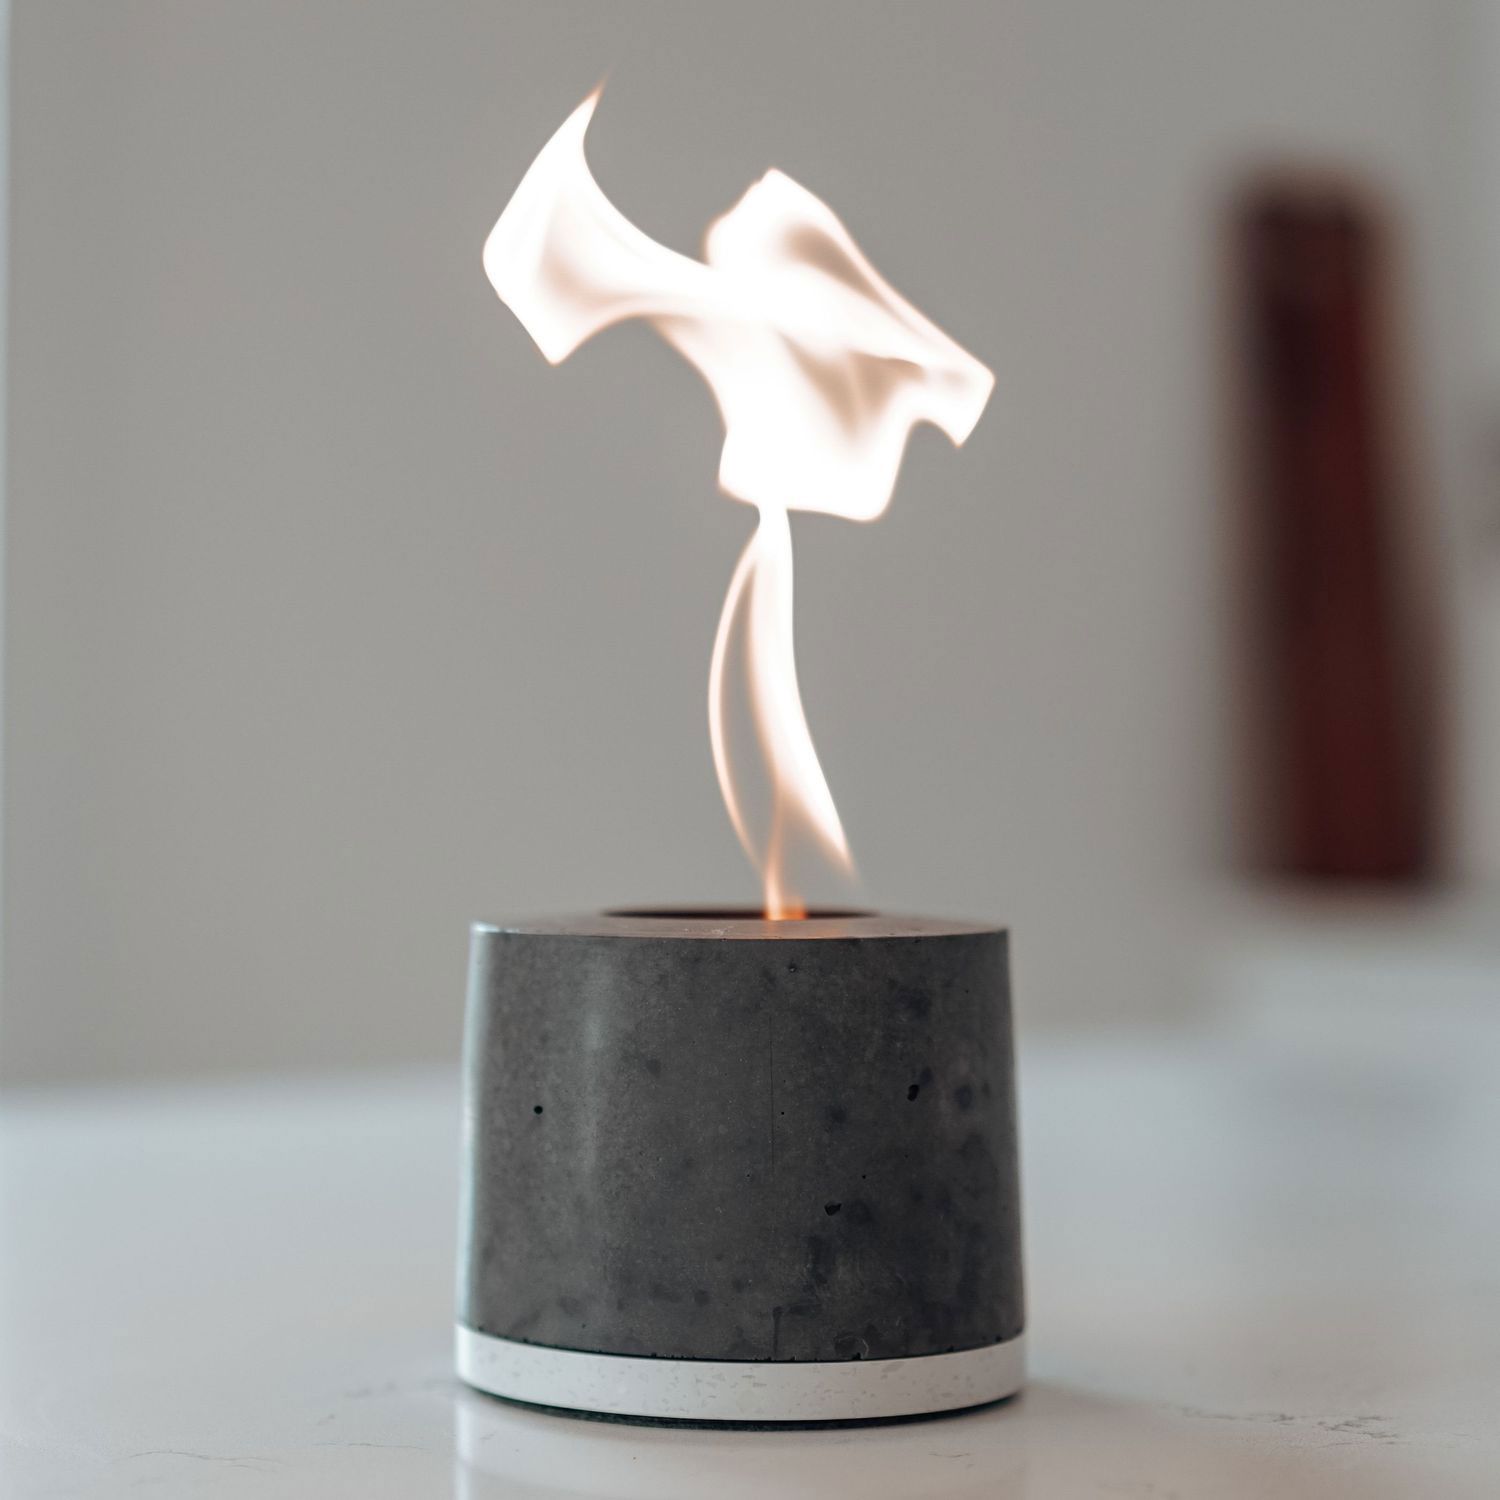 Beste Geschenke, Geschenkideen für Frauen - Flîkr Fire Personal Concrete Fireplace